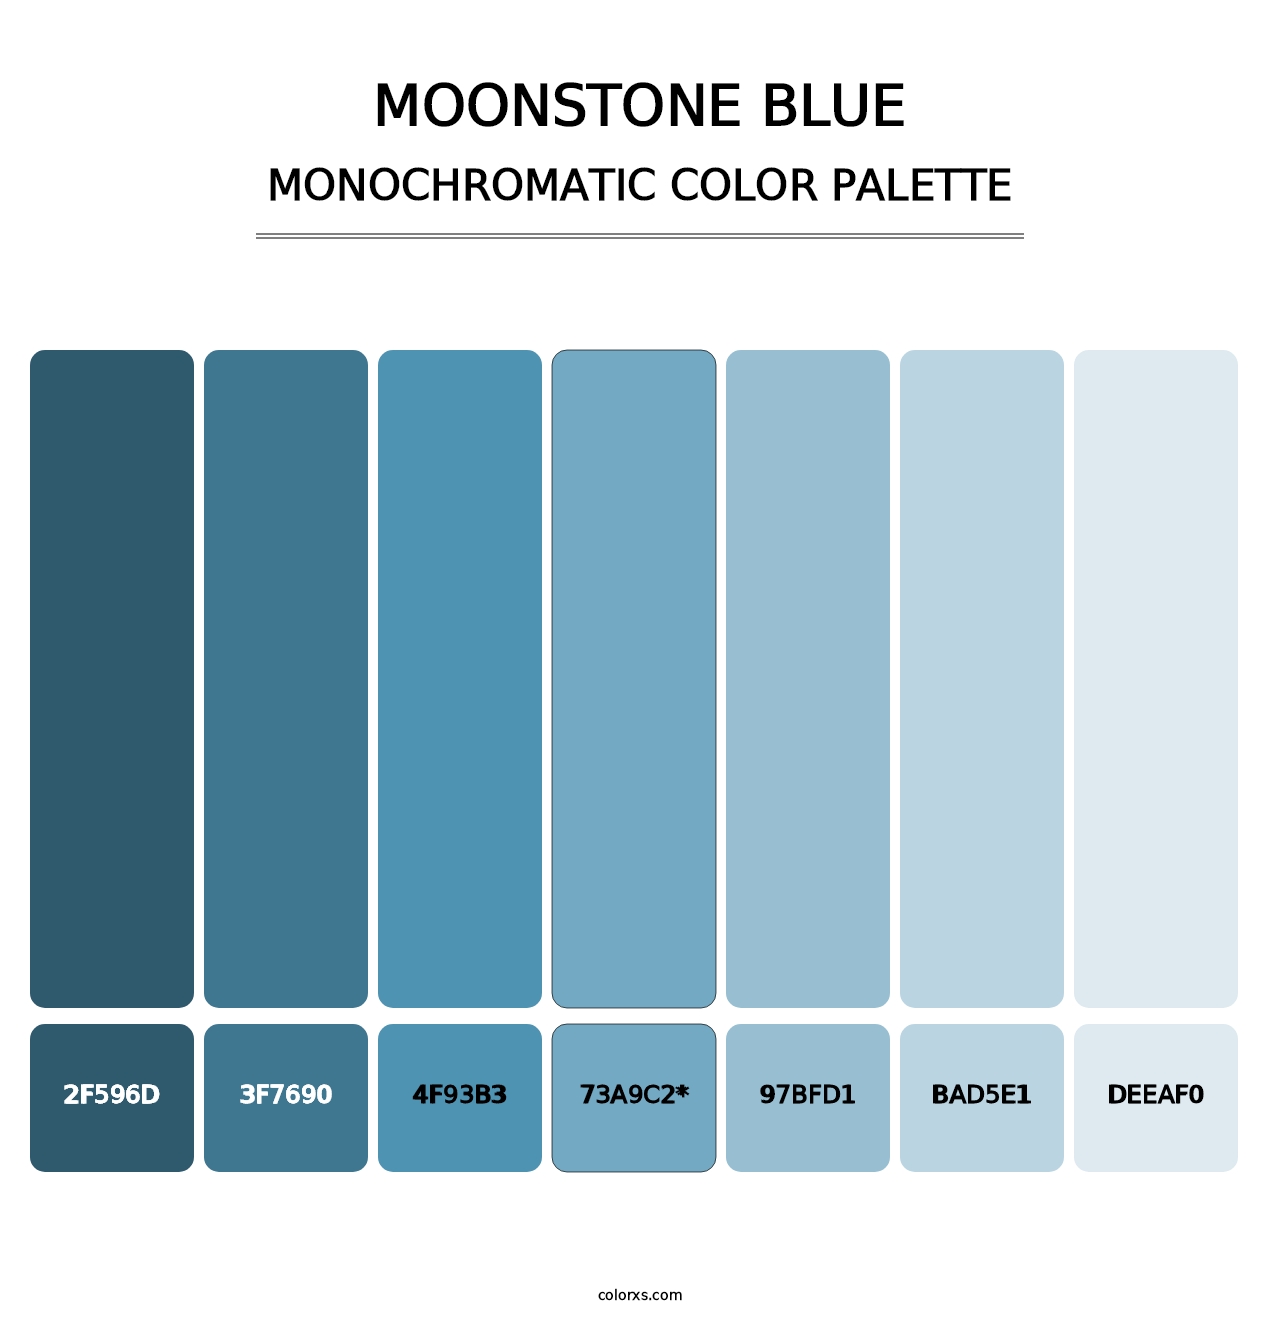 Moonstone Blue - Monochromatic Color Palette